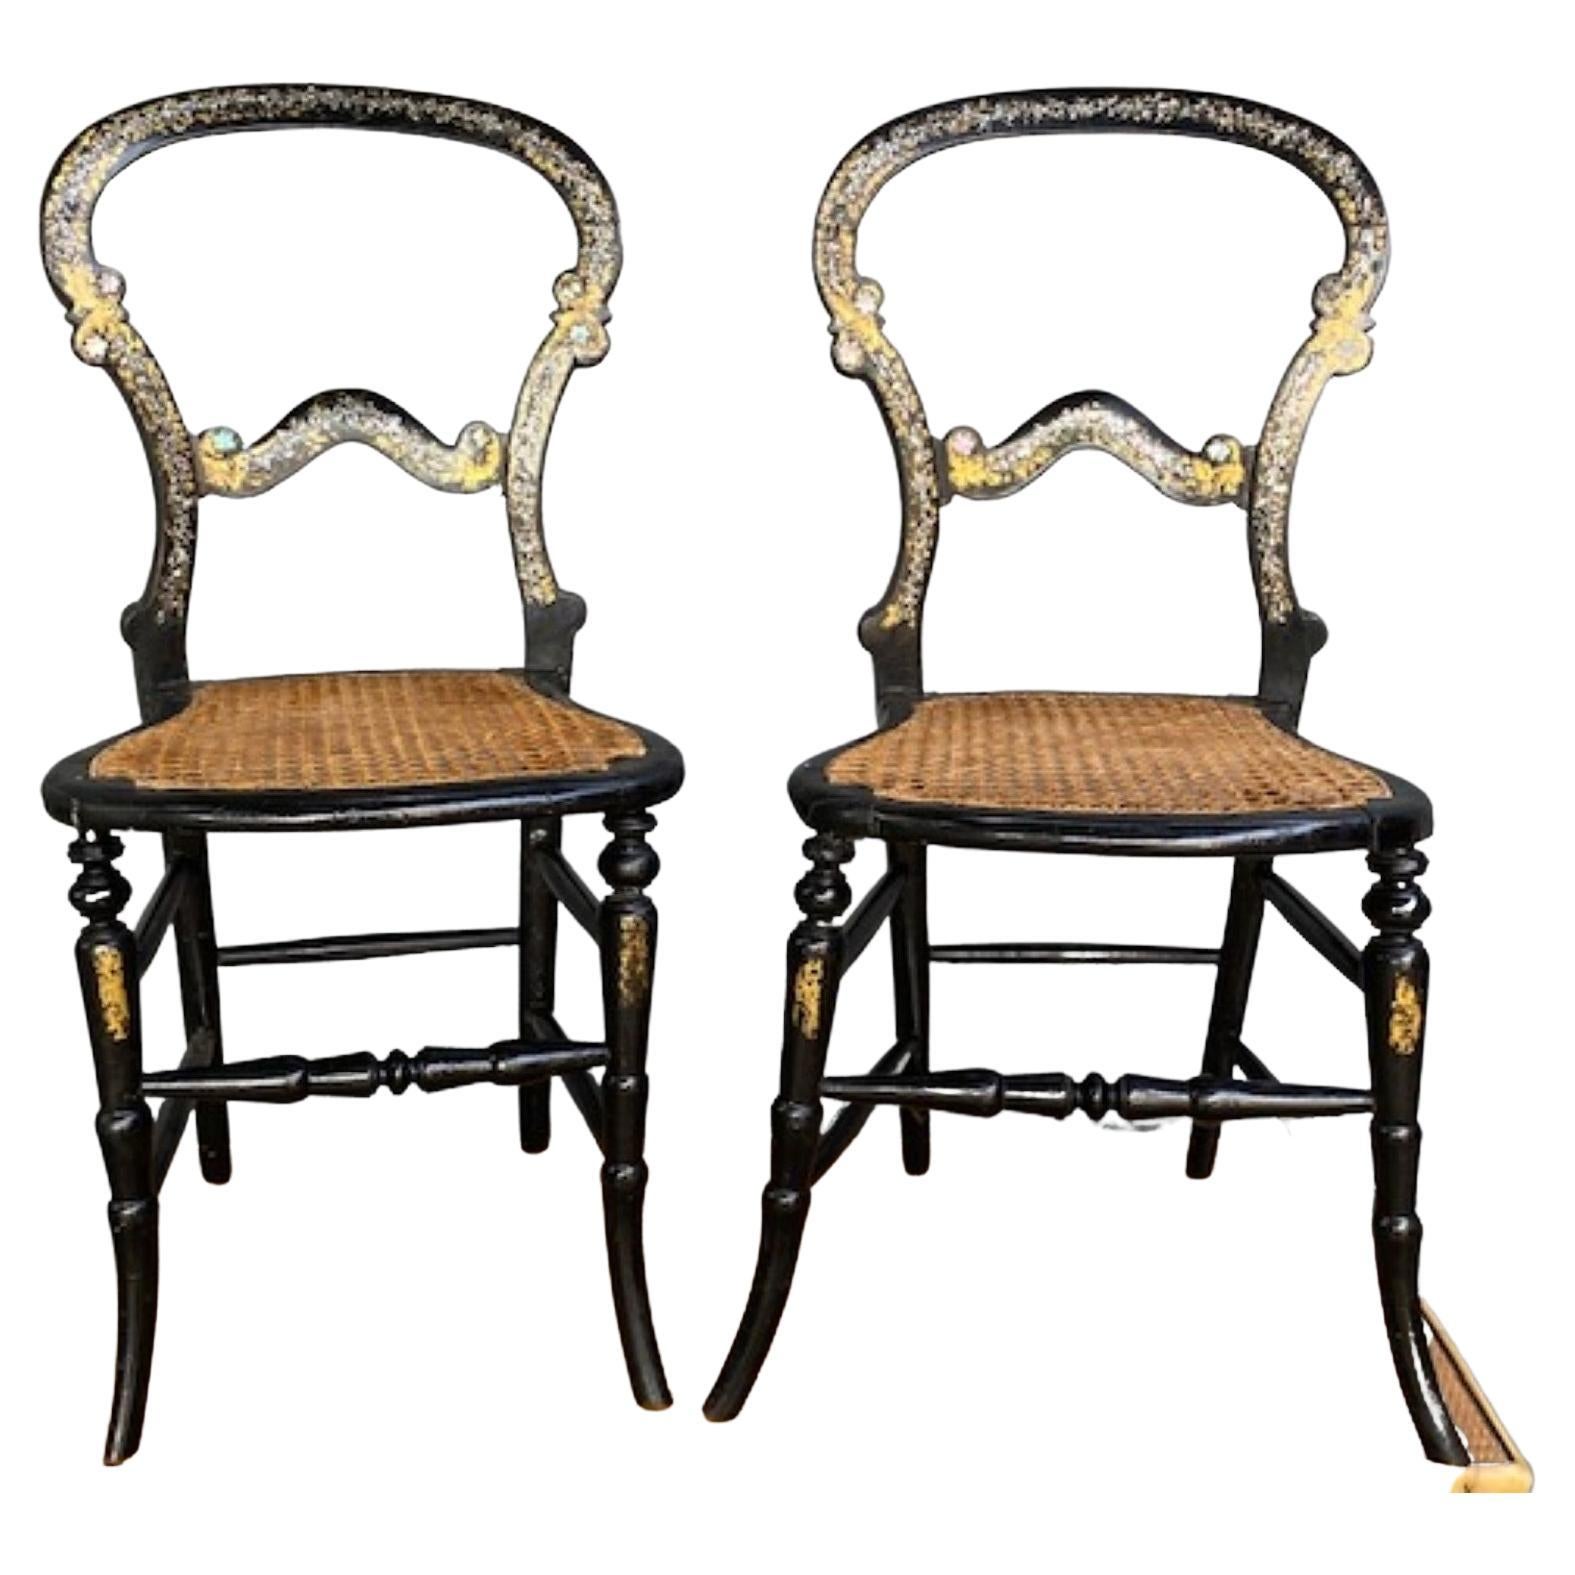 Paar aus dem 19. Jahrhundert. Antike englische ebonisierte viktorianische Beistellstühle

Ein schönes Paar viktorianischer Bergere.  Ebonisierte, perlmuttfarbene und vergoldete, dekorative Beistellstühle.  Selten in Paaren anzutreffen. Dieses Paar